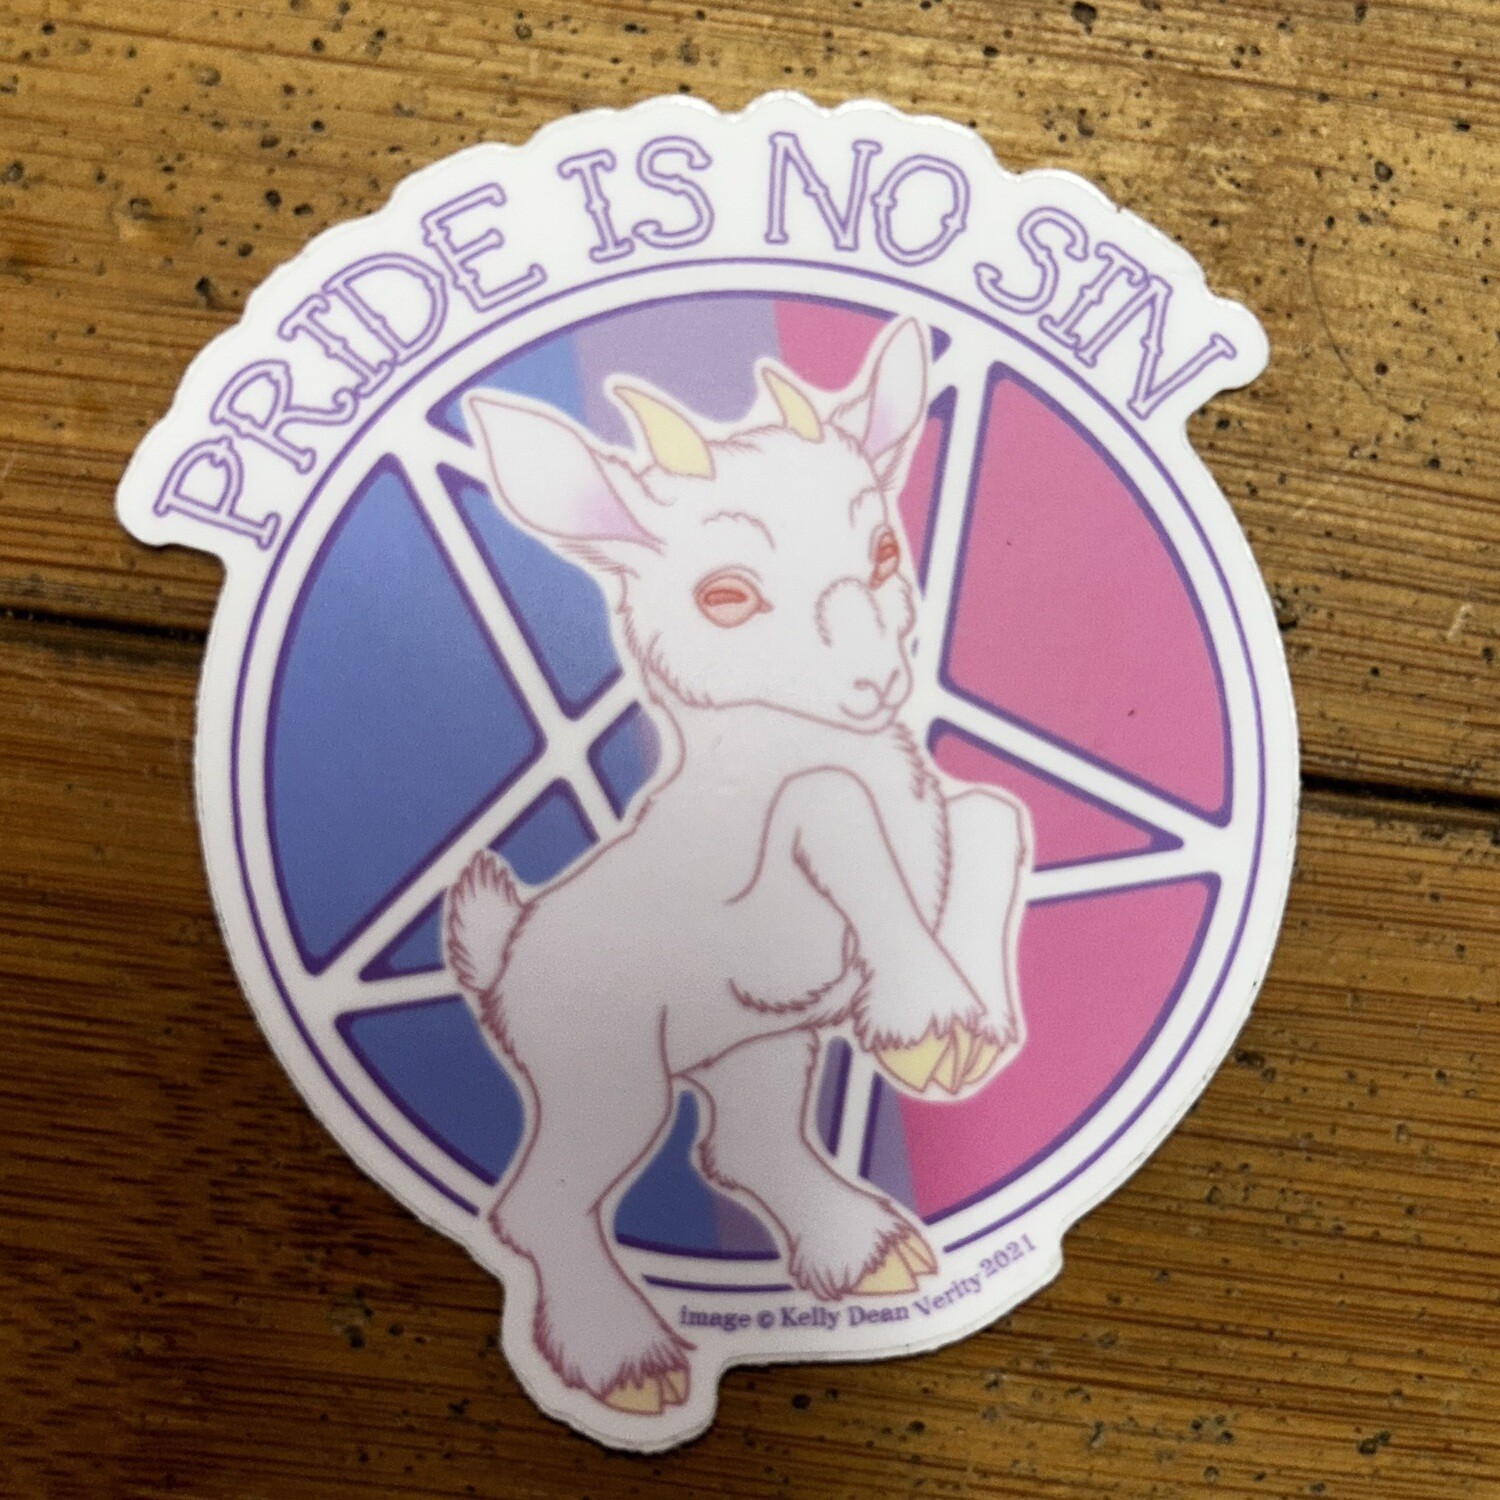 Pride Is No Sin (Bi Pride) - Sticker by Kelly Dean Verity